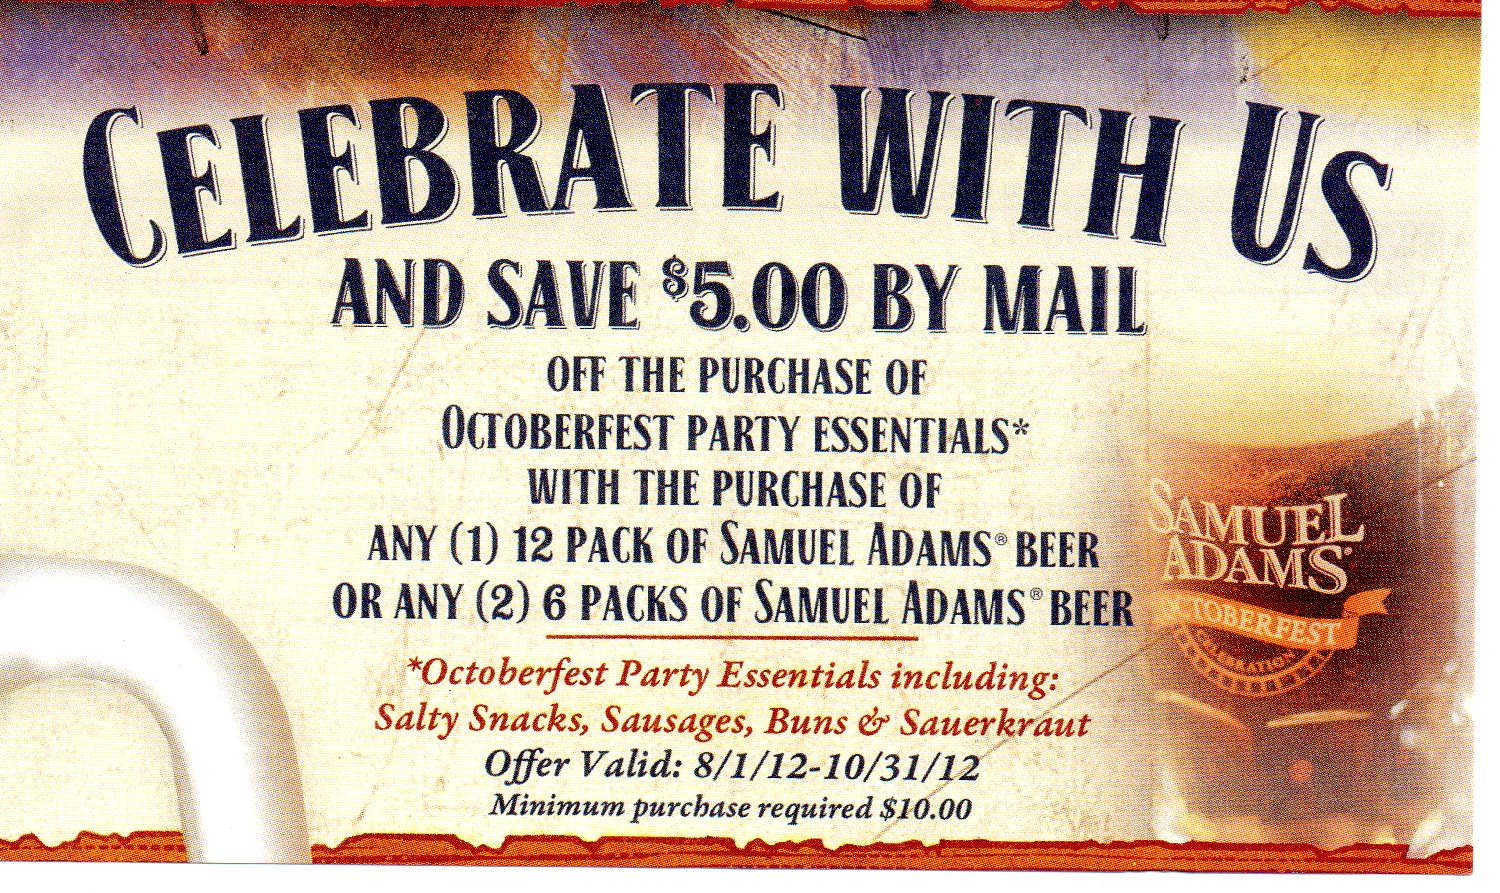 coupon-stl-samuel-adams-beer-rebate-5-on-octoberfest-party-essentials